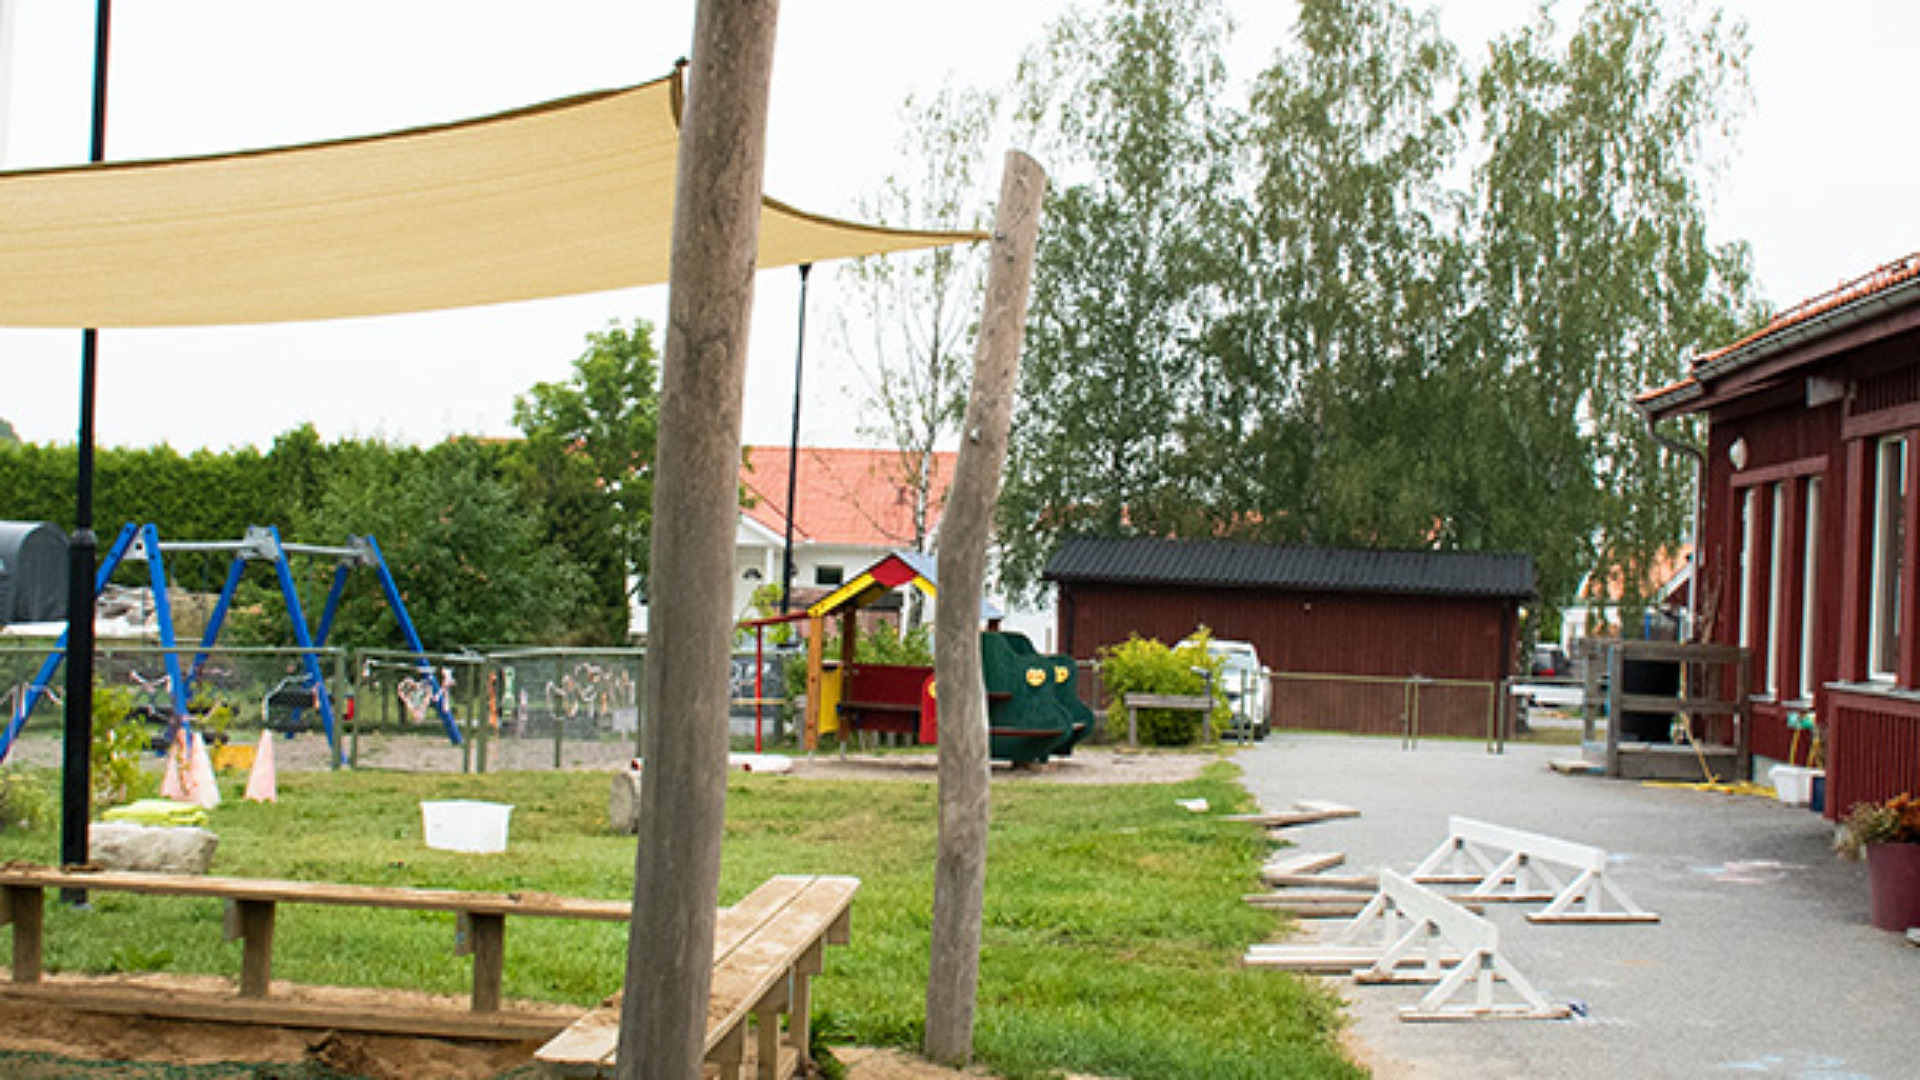 Gården till förskolan Björke är fylld med ytor där barnen kan leka. Här finns gräsmatta, sandlådor, gungor, hinderbana och mycket mer. Förskolan är en enplansbyggnad i rött.